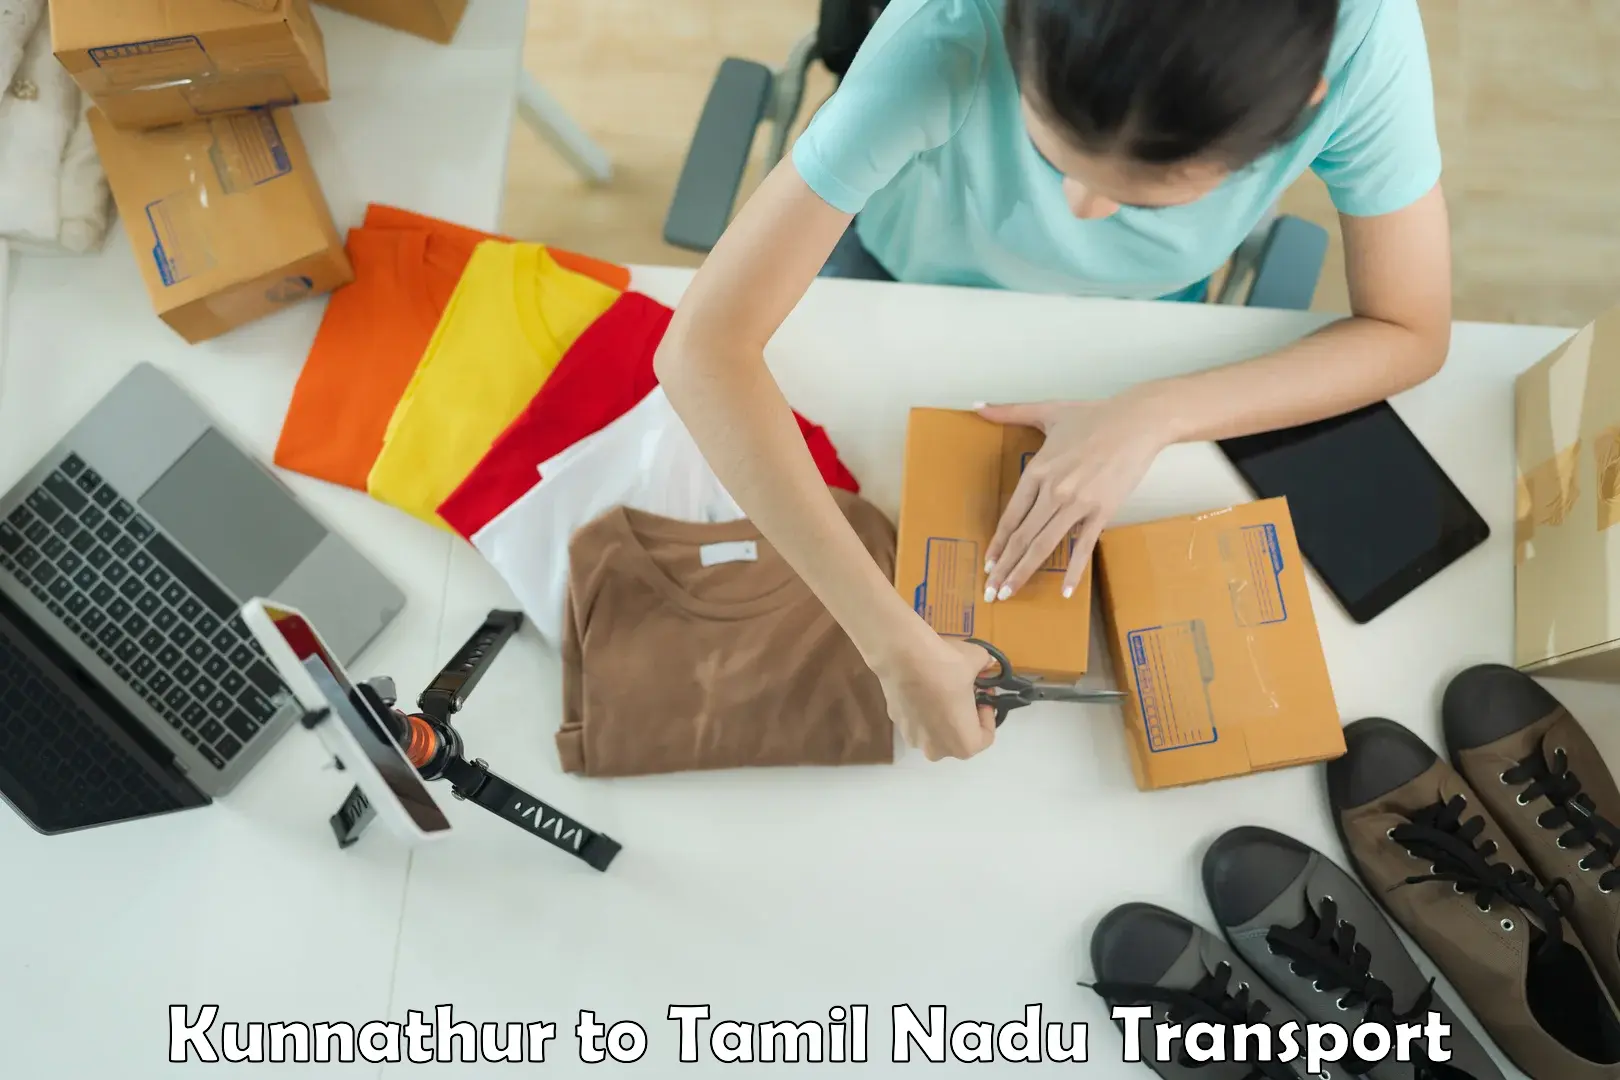 Nearest transport service Kunnathur to Tenkasi